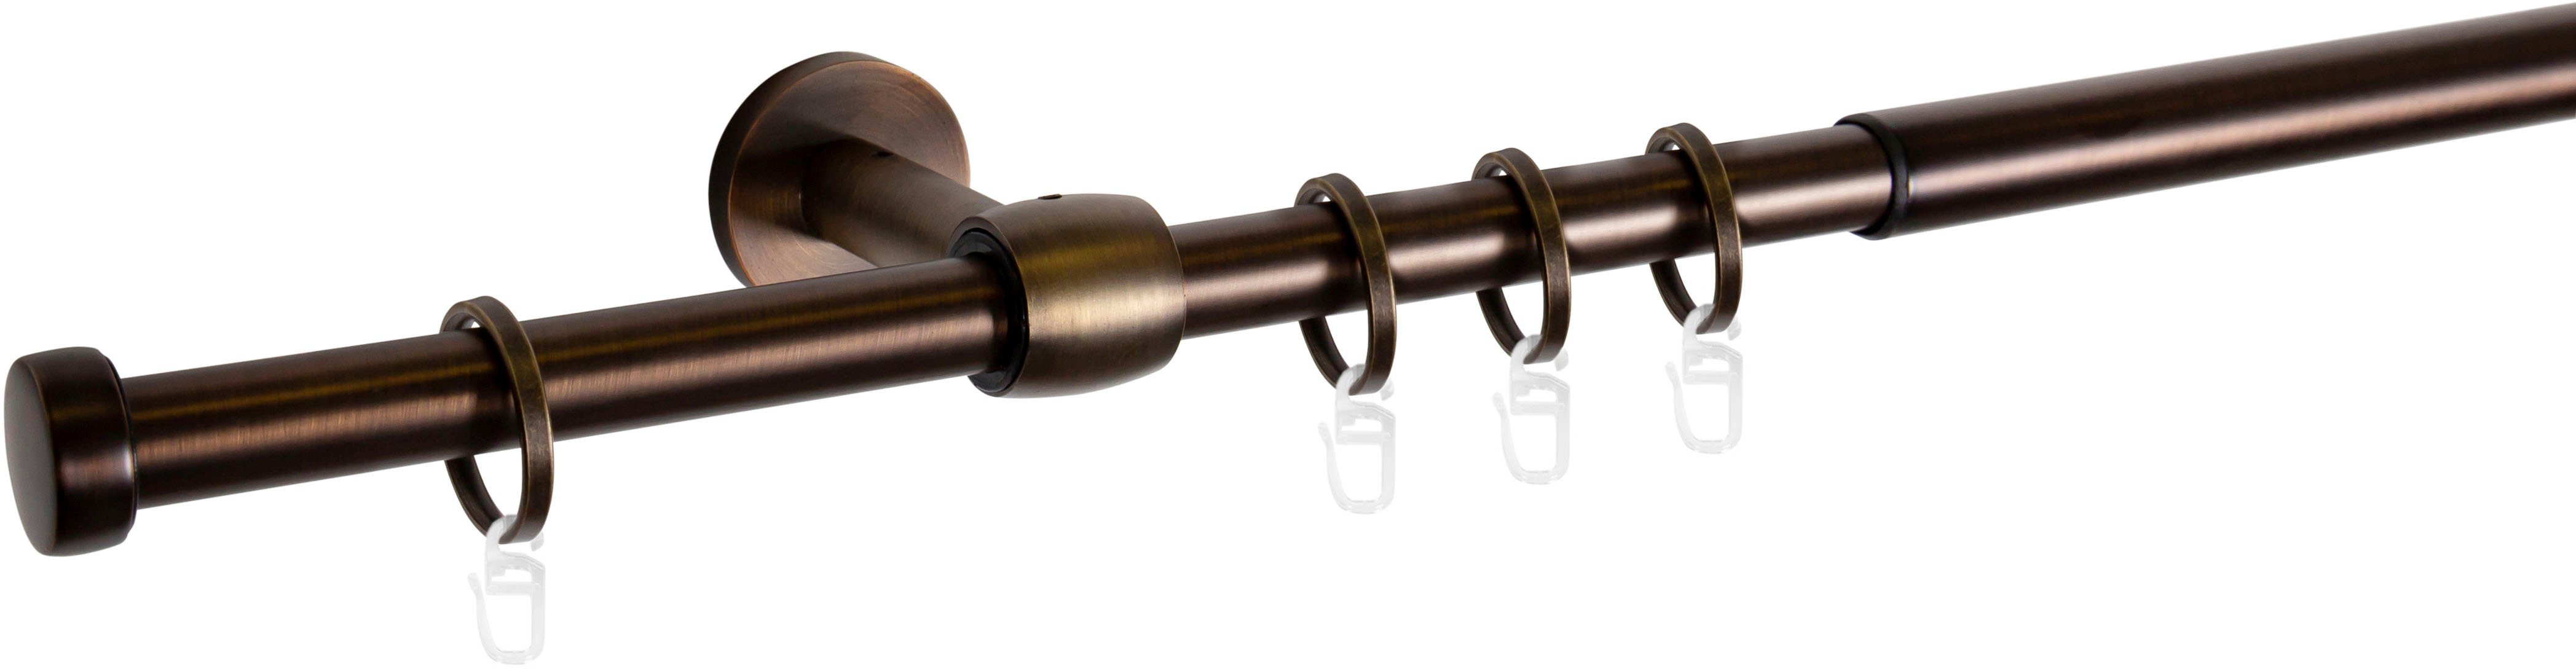 Gardinenstange »Cap-Noble«, mydeco, Ø 16 mm, 1-läufig, ausziehbar online  kaufen | OTTO